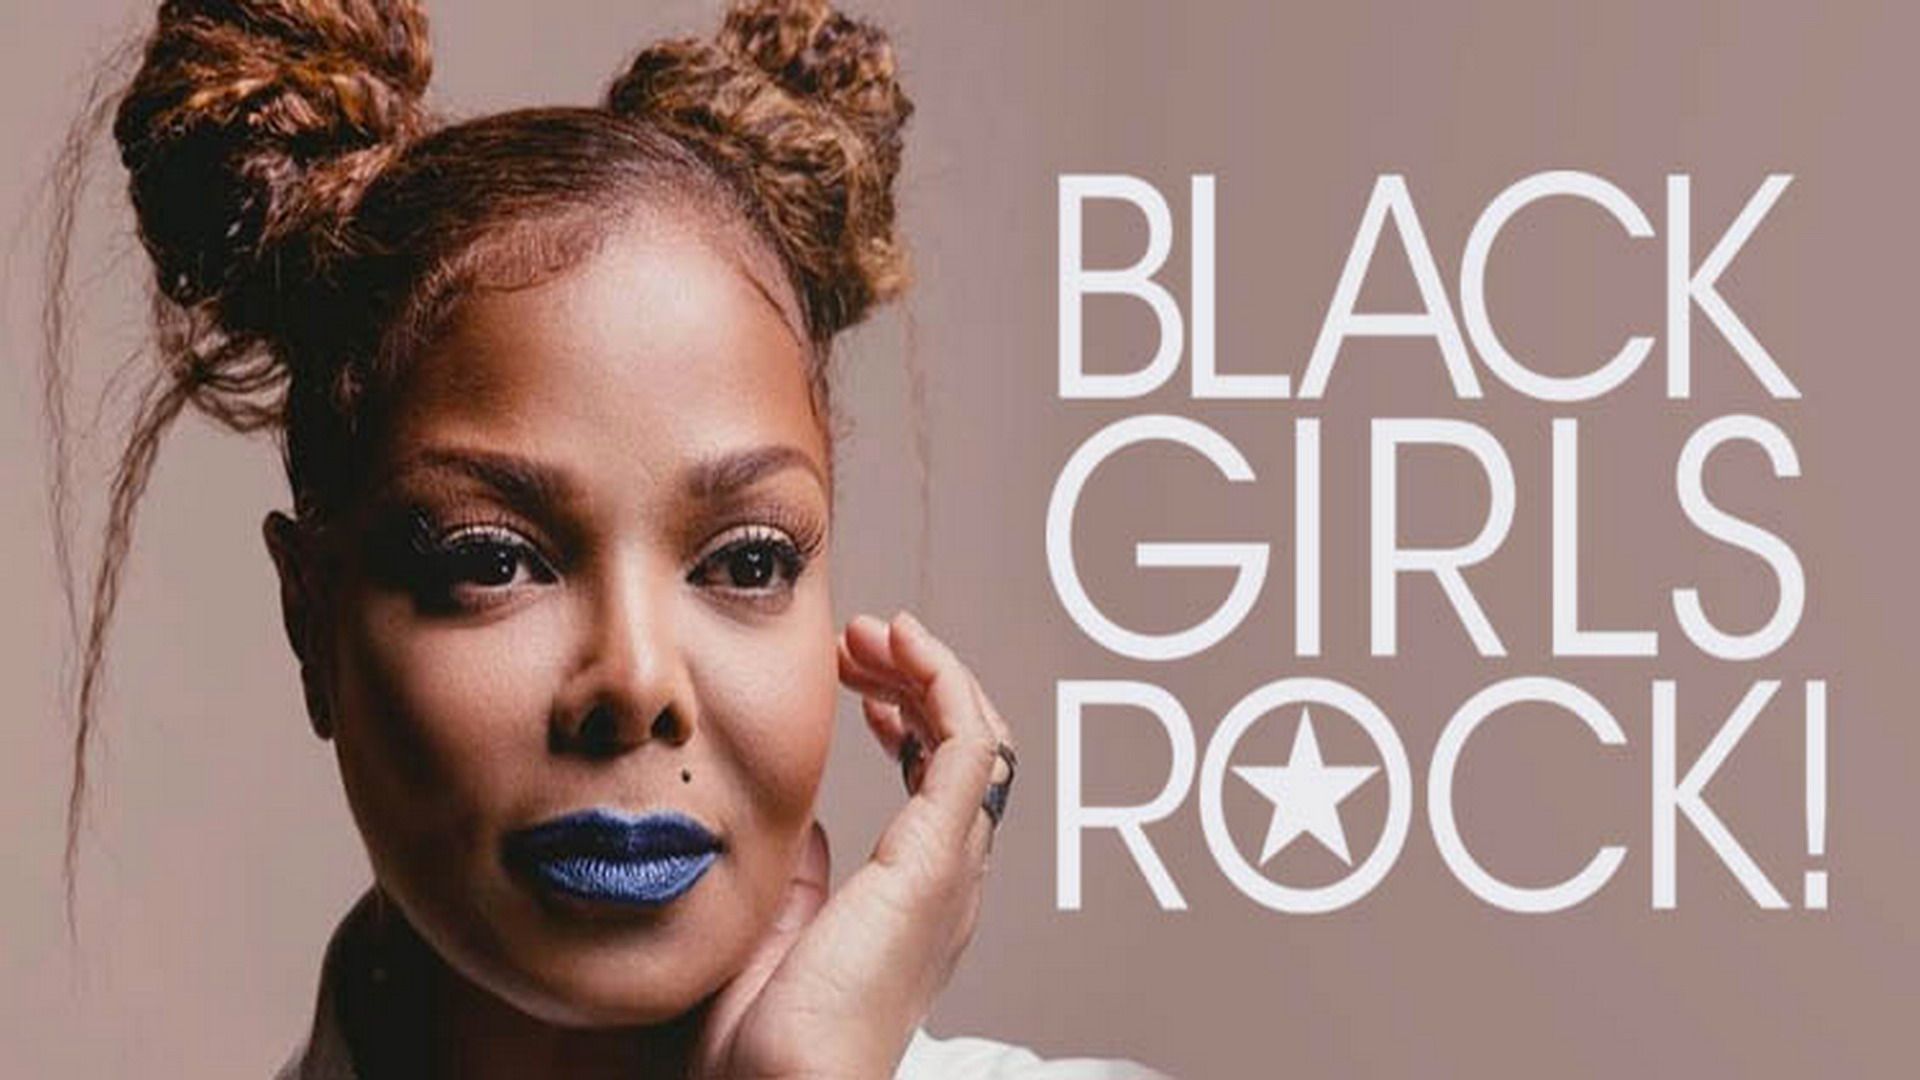 Season 01, Episode 08 Black Girls Rock! Awards 2018